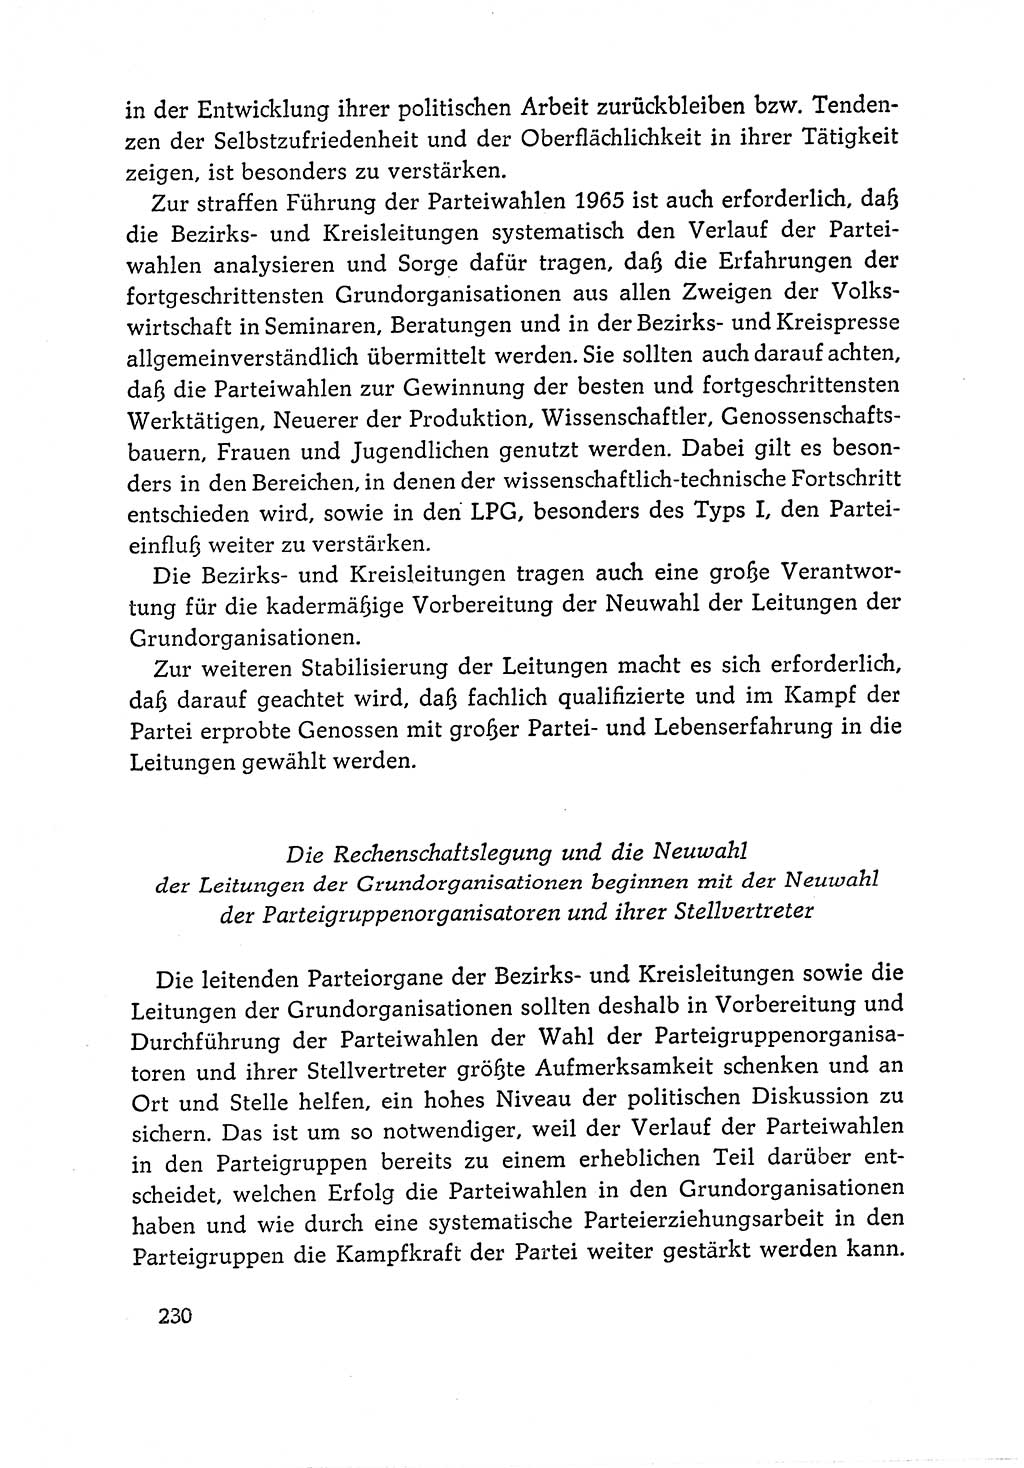 Dokumente der Sozialistischen Einheitspartei Deutschlands (SED) [Deutsche Demokratische Republik (DDR)] 1964-1965, Seite 230 (Dok. SED DDR 1964-1965, S. 230)